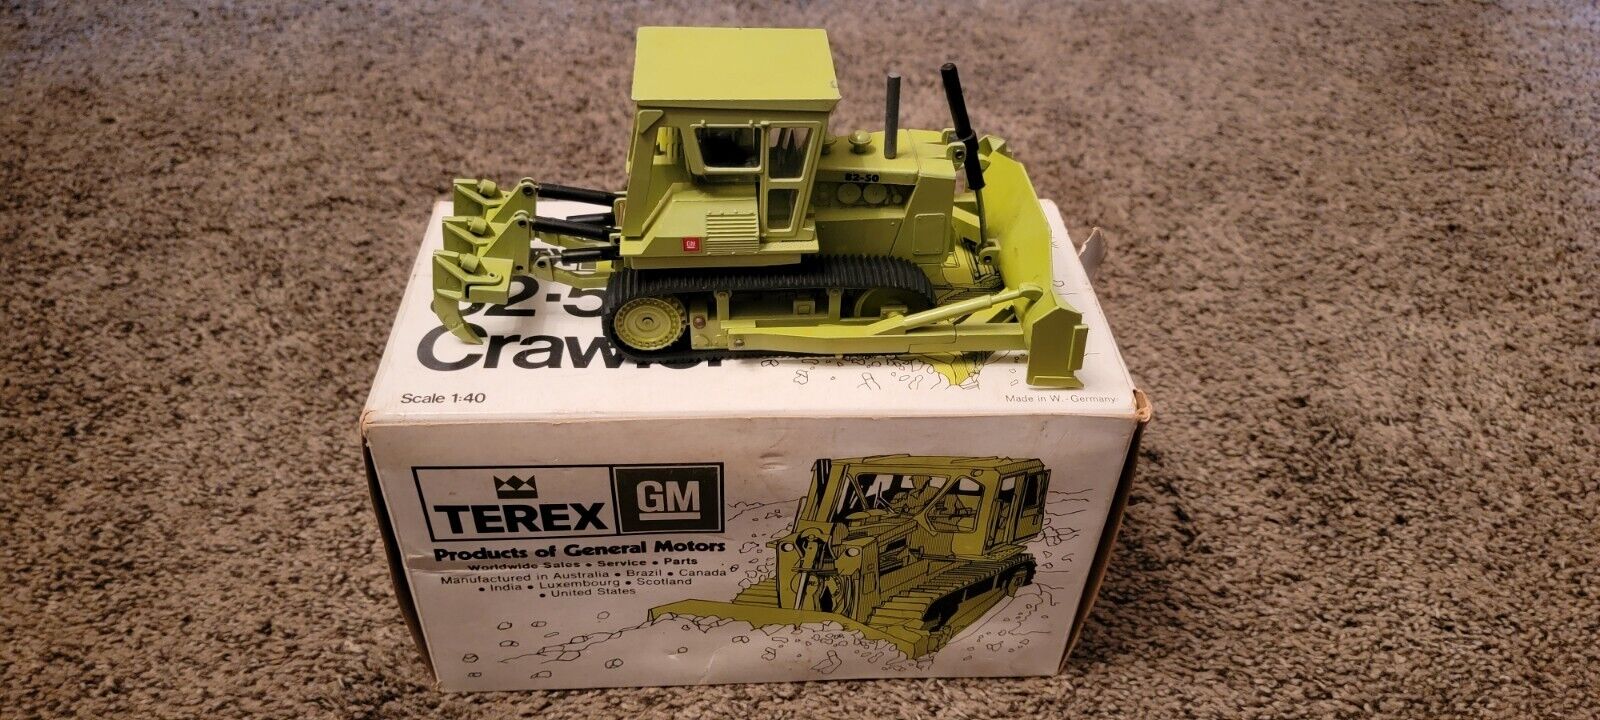 Terex GM 82-50 1:40 Scale Bulldozer NZG NIB